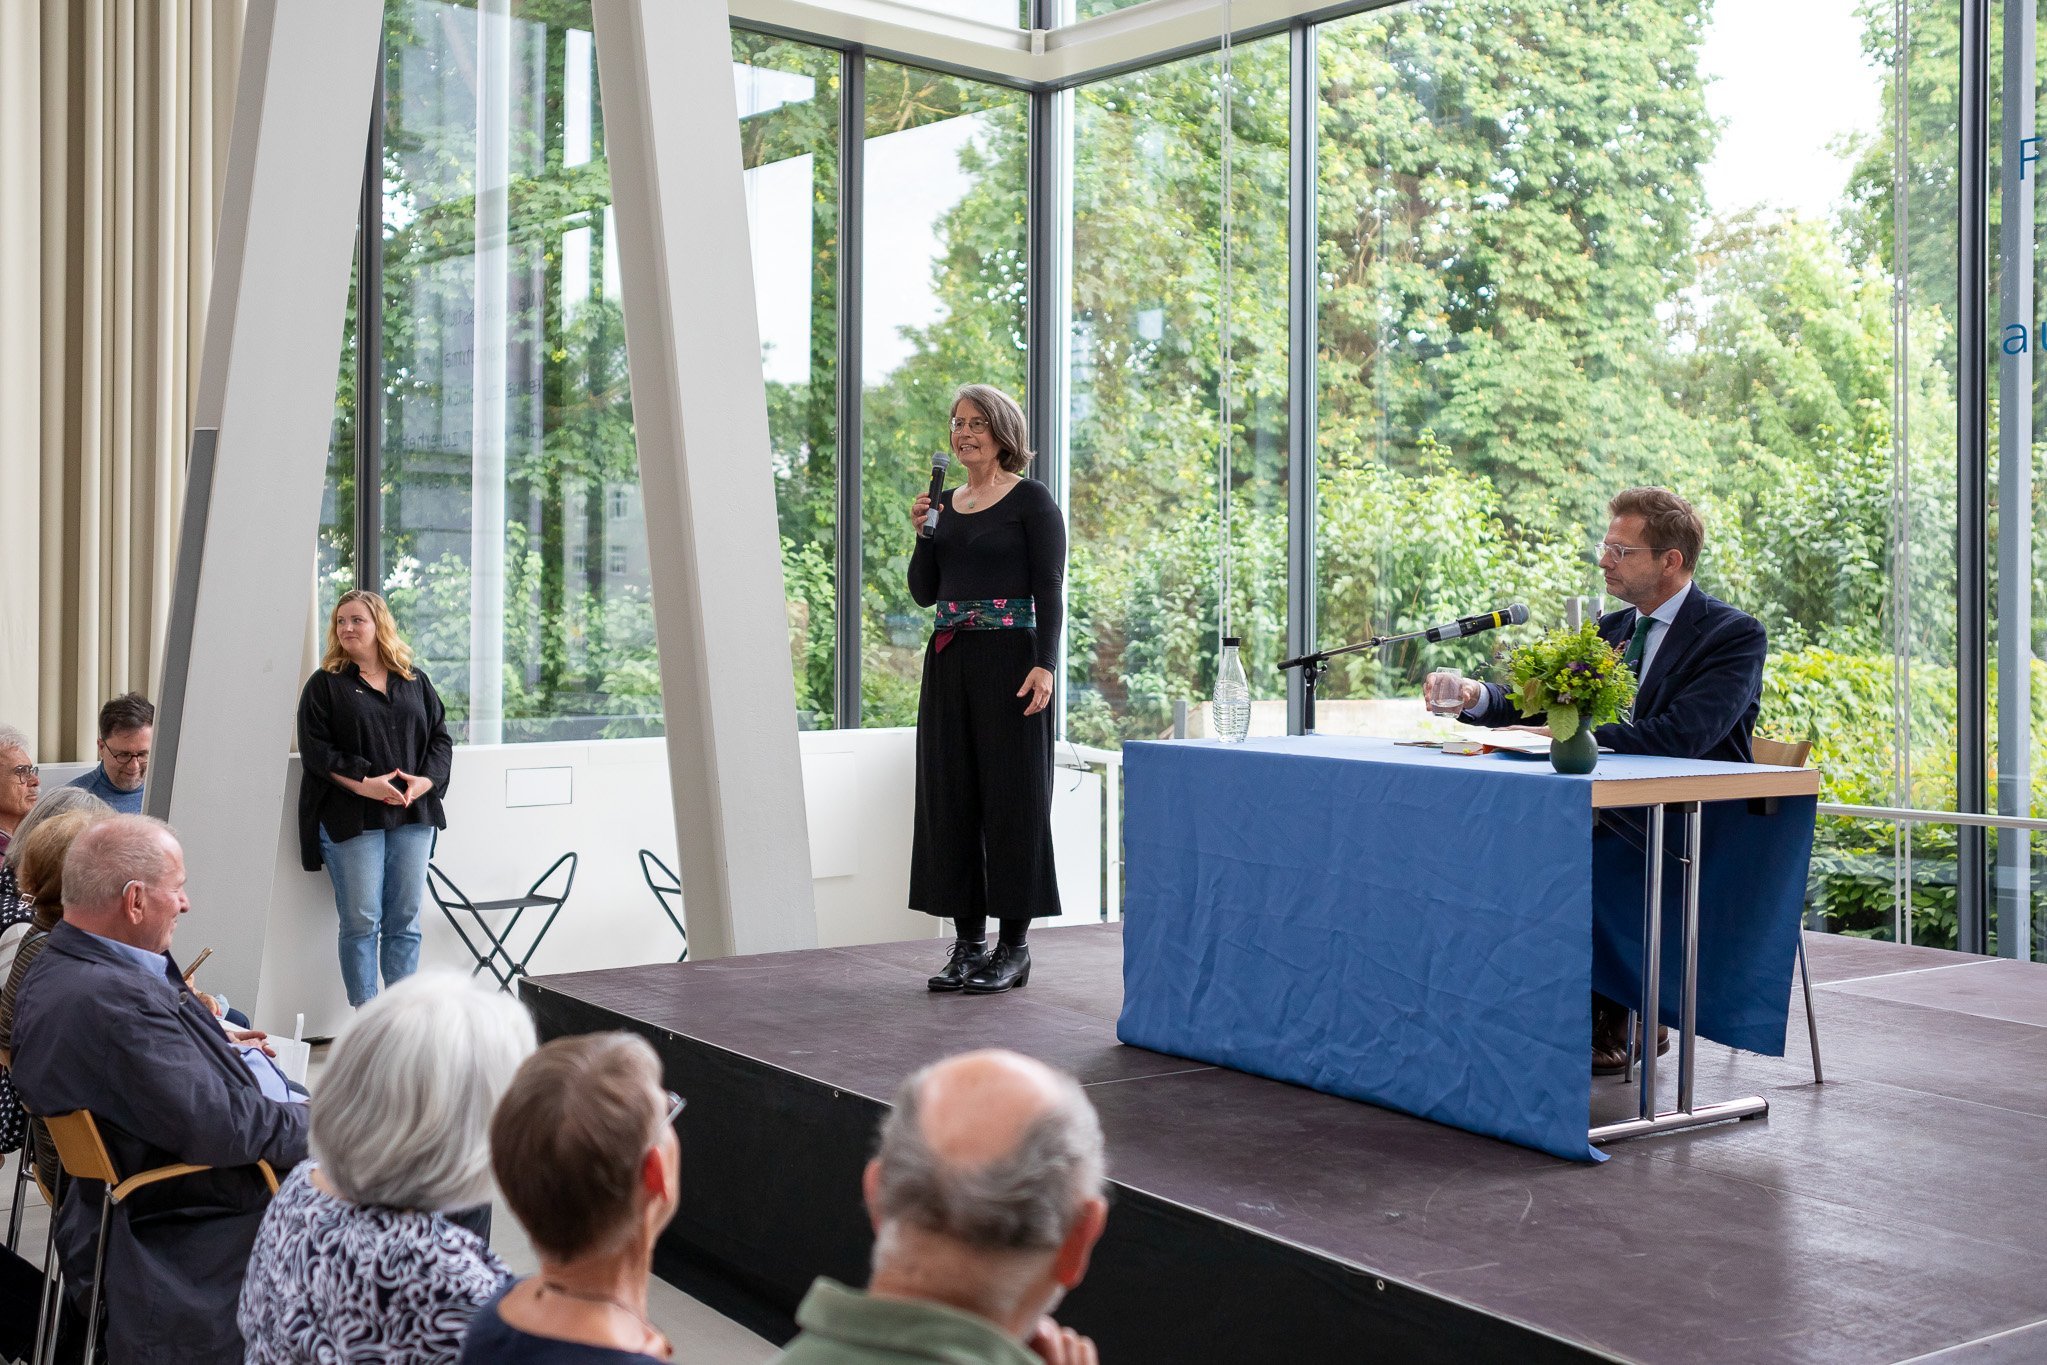 Auf dem Podium steht Dr. Birte Frenssen, daneben sitzt Florian Illies. Foto: André Gschweng.